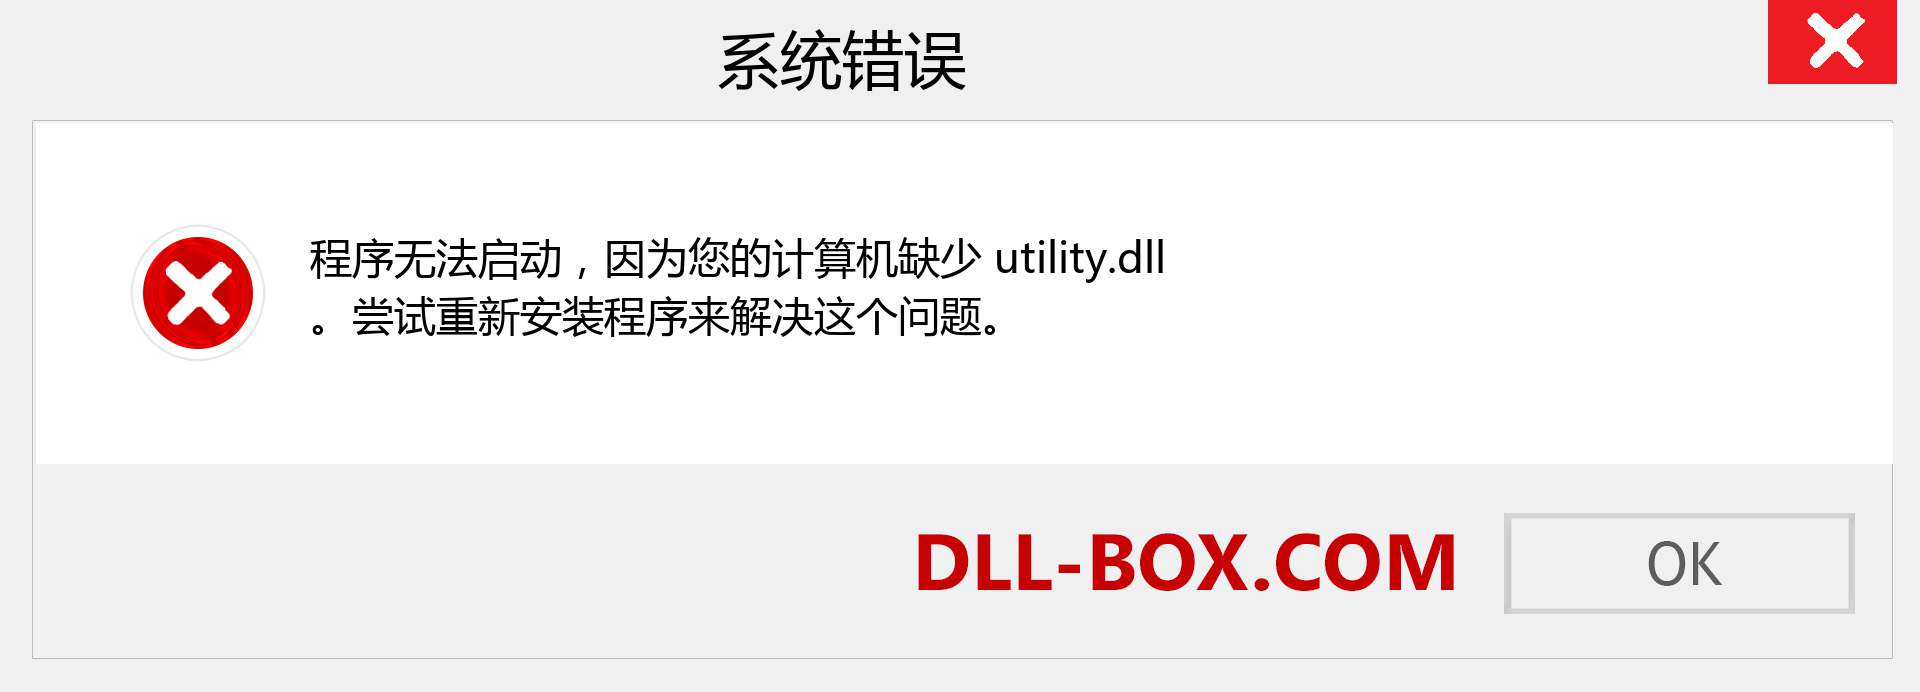 utility.dll 文件丢失？。 适用于 Windows 7、8、10 的下载 - 修复 Windows、照片、图像上的 utility dll 丢失错误